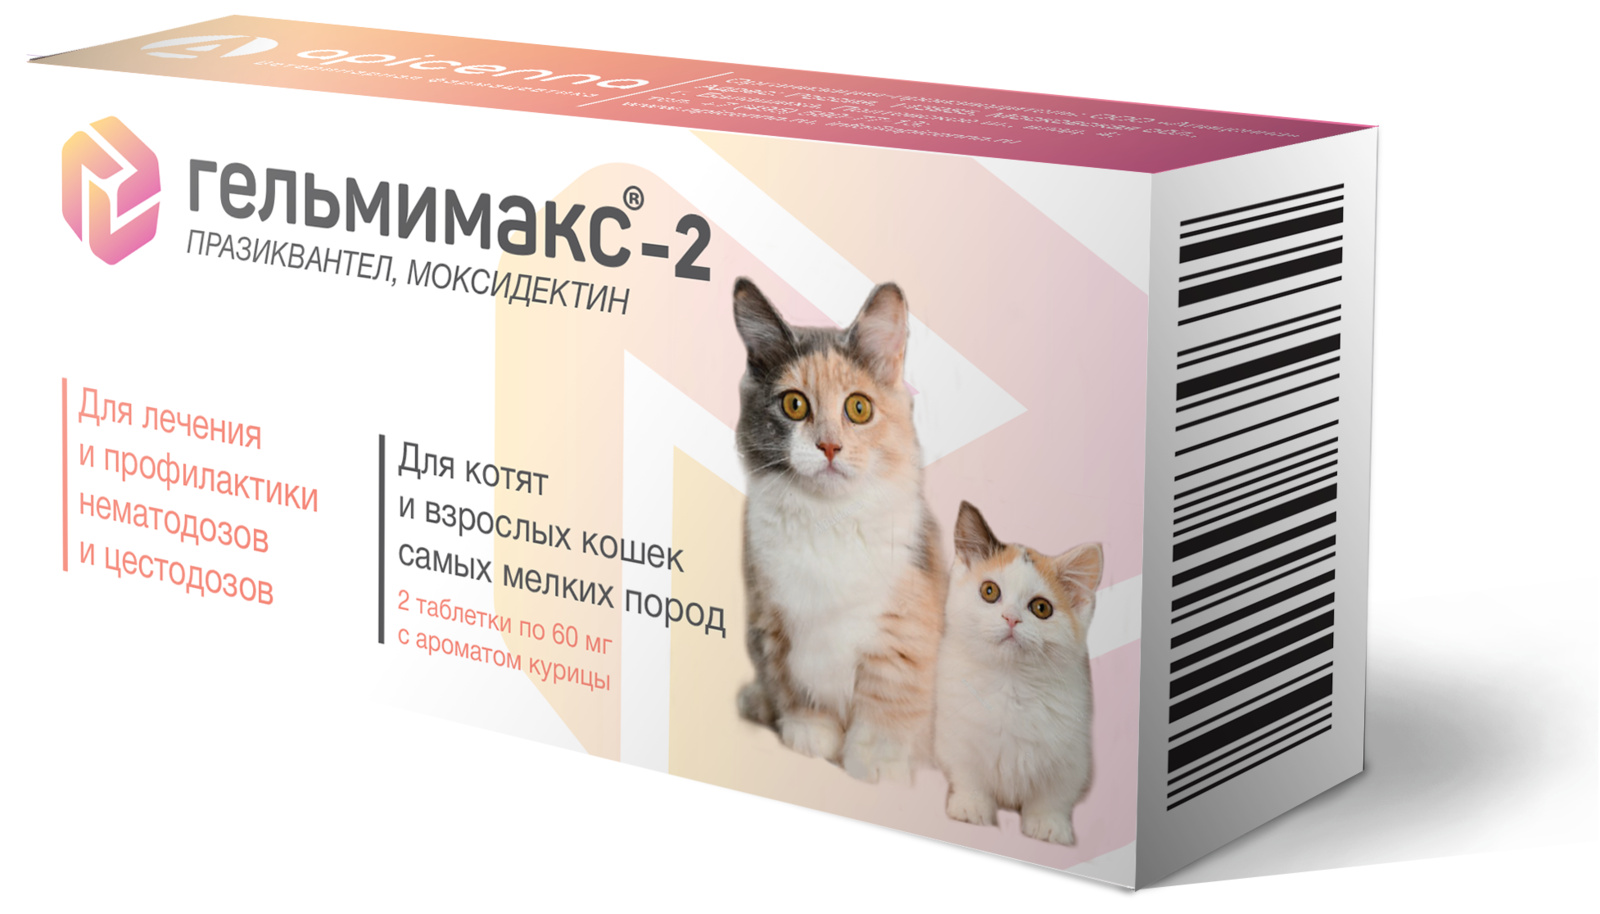 Apicenna гельмимакс-2 для взрослых кошек и котят самых мелких пород, 2 таблетки по 60 мг (6 г) Apicenna гельмимакс-2 для взрослых кошек и котят самых мелких пород, 2 таблетки по 60 мг (6 г) - фото 1